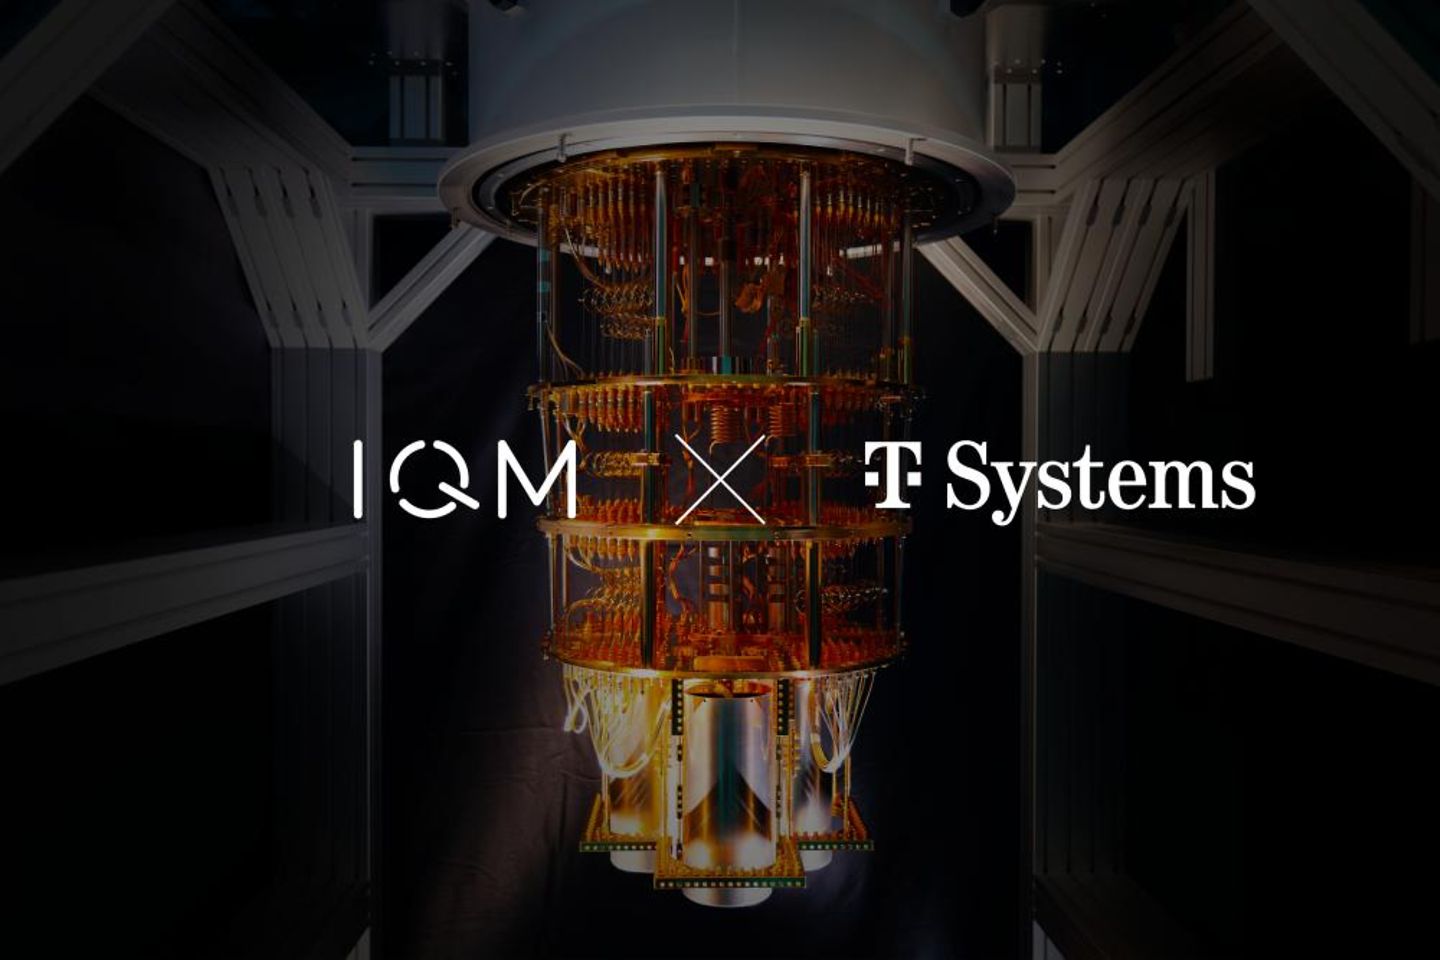 Illustratie van een kwantumcomputer met logo van IQM en T-Systems